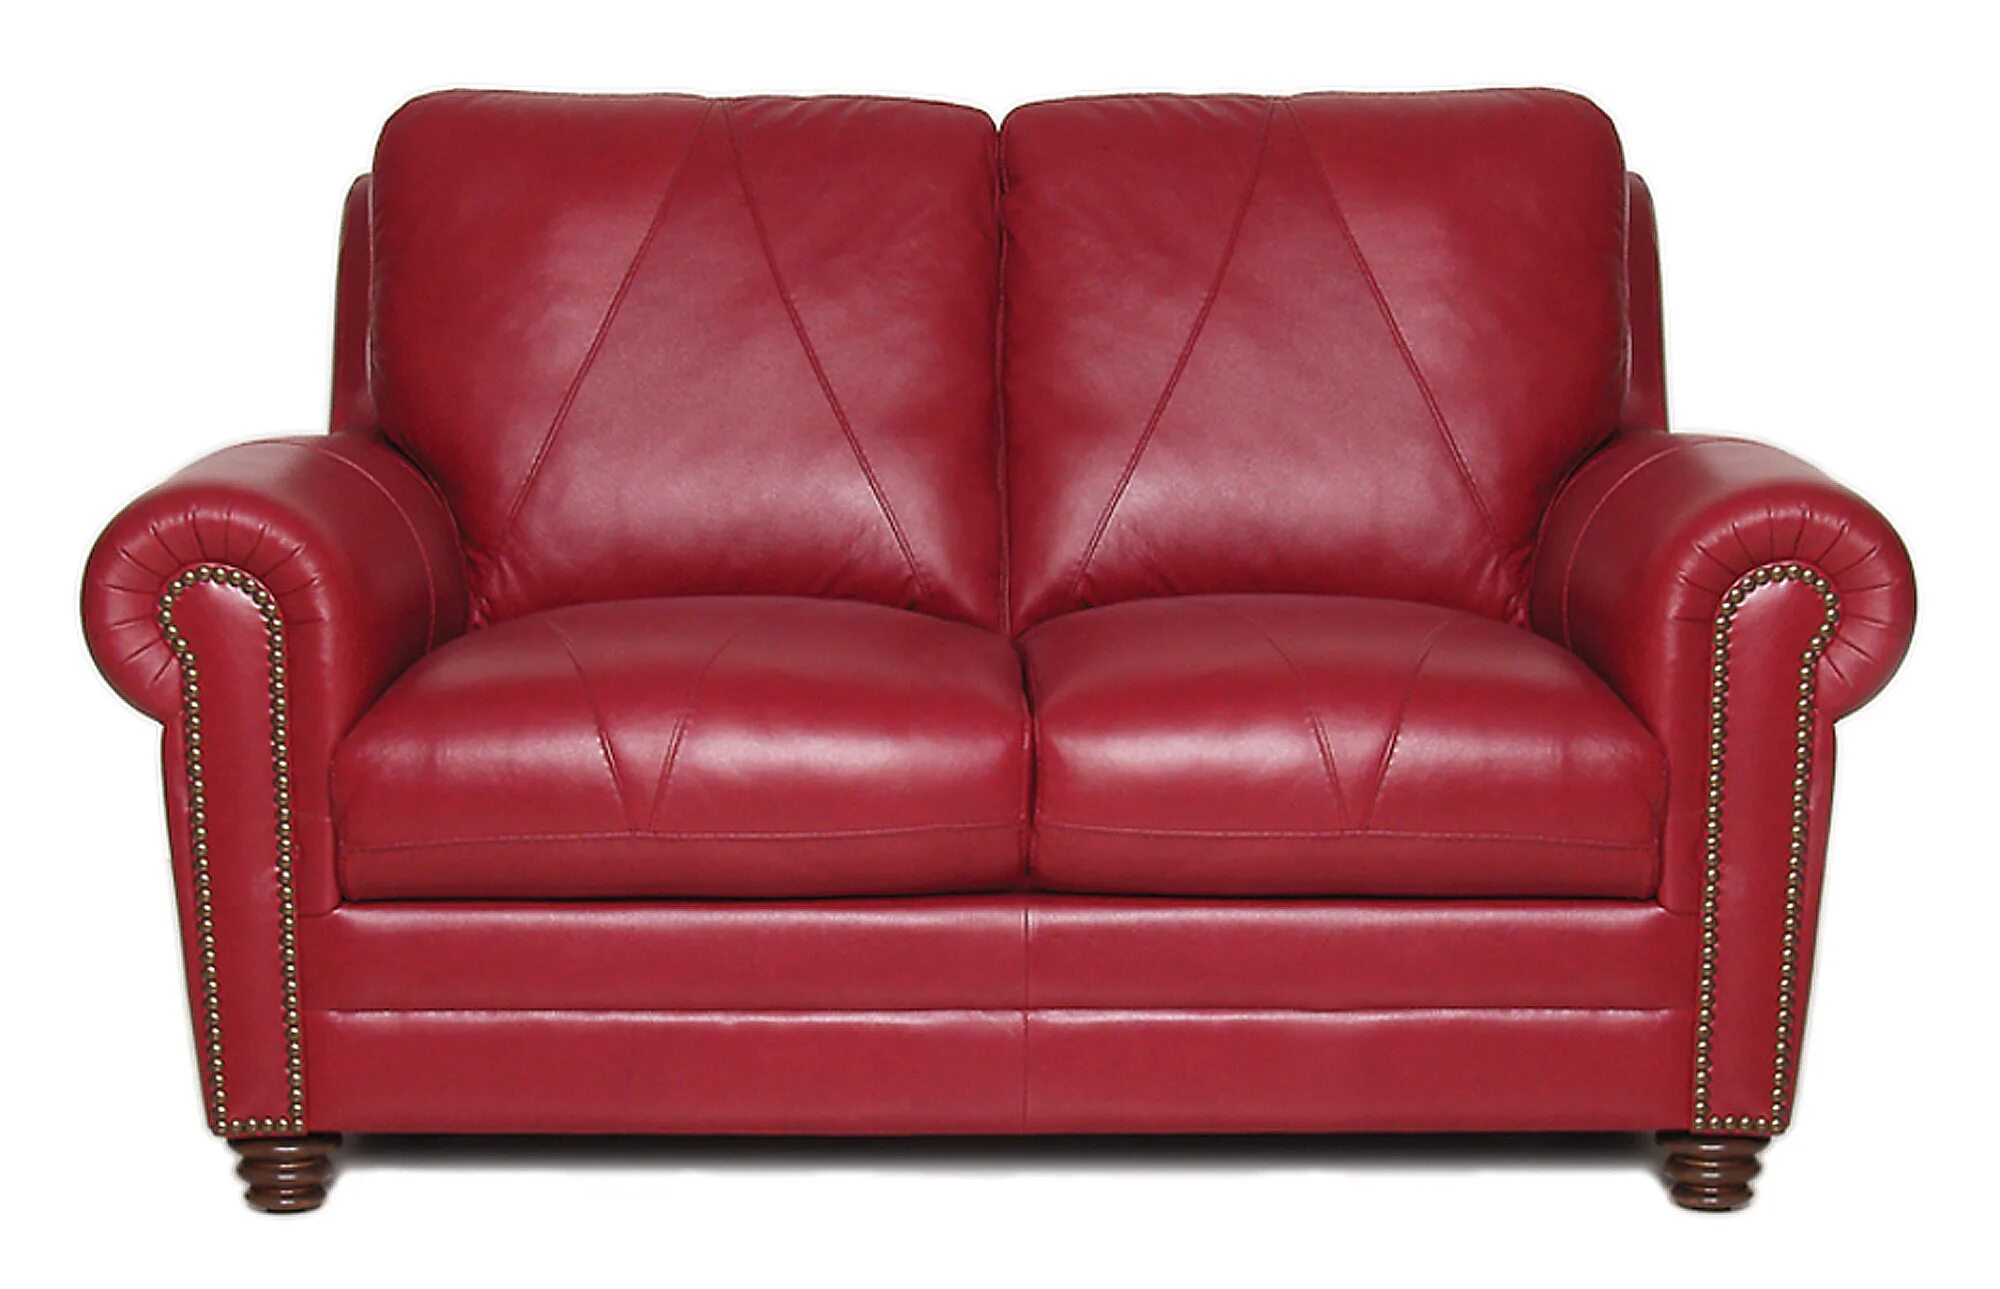 Кожаные двухместные. Двухместное кожаное кресло бордо Пинскдрев. Красный кожаный диван. Красное кожаное кресло. Диван хоффф красный кожа.